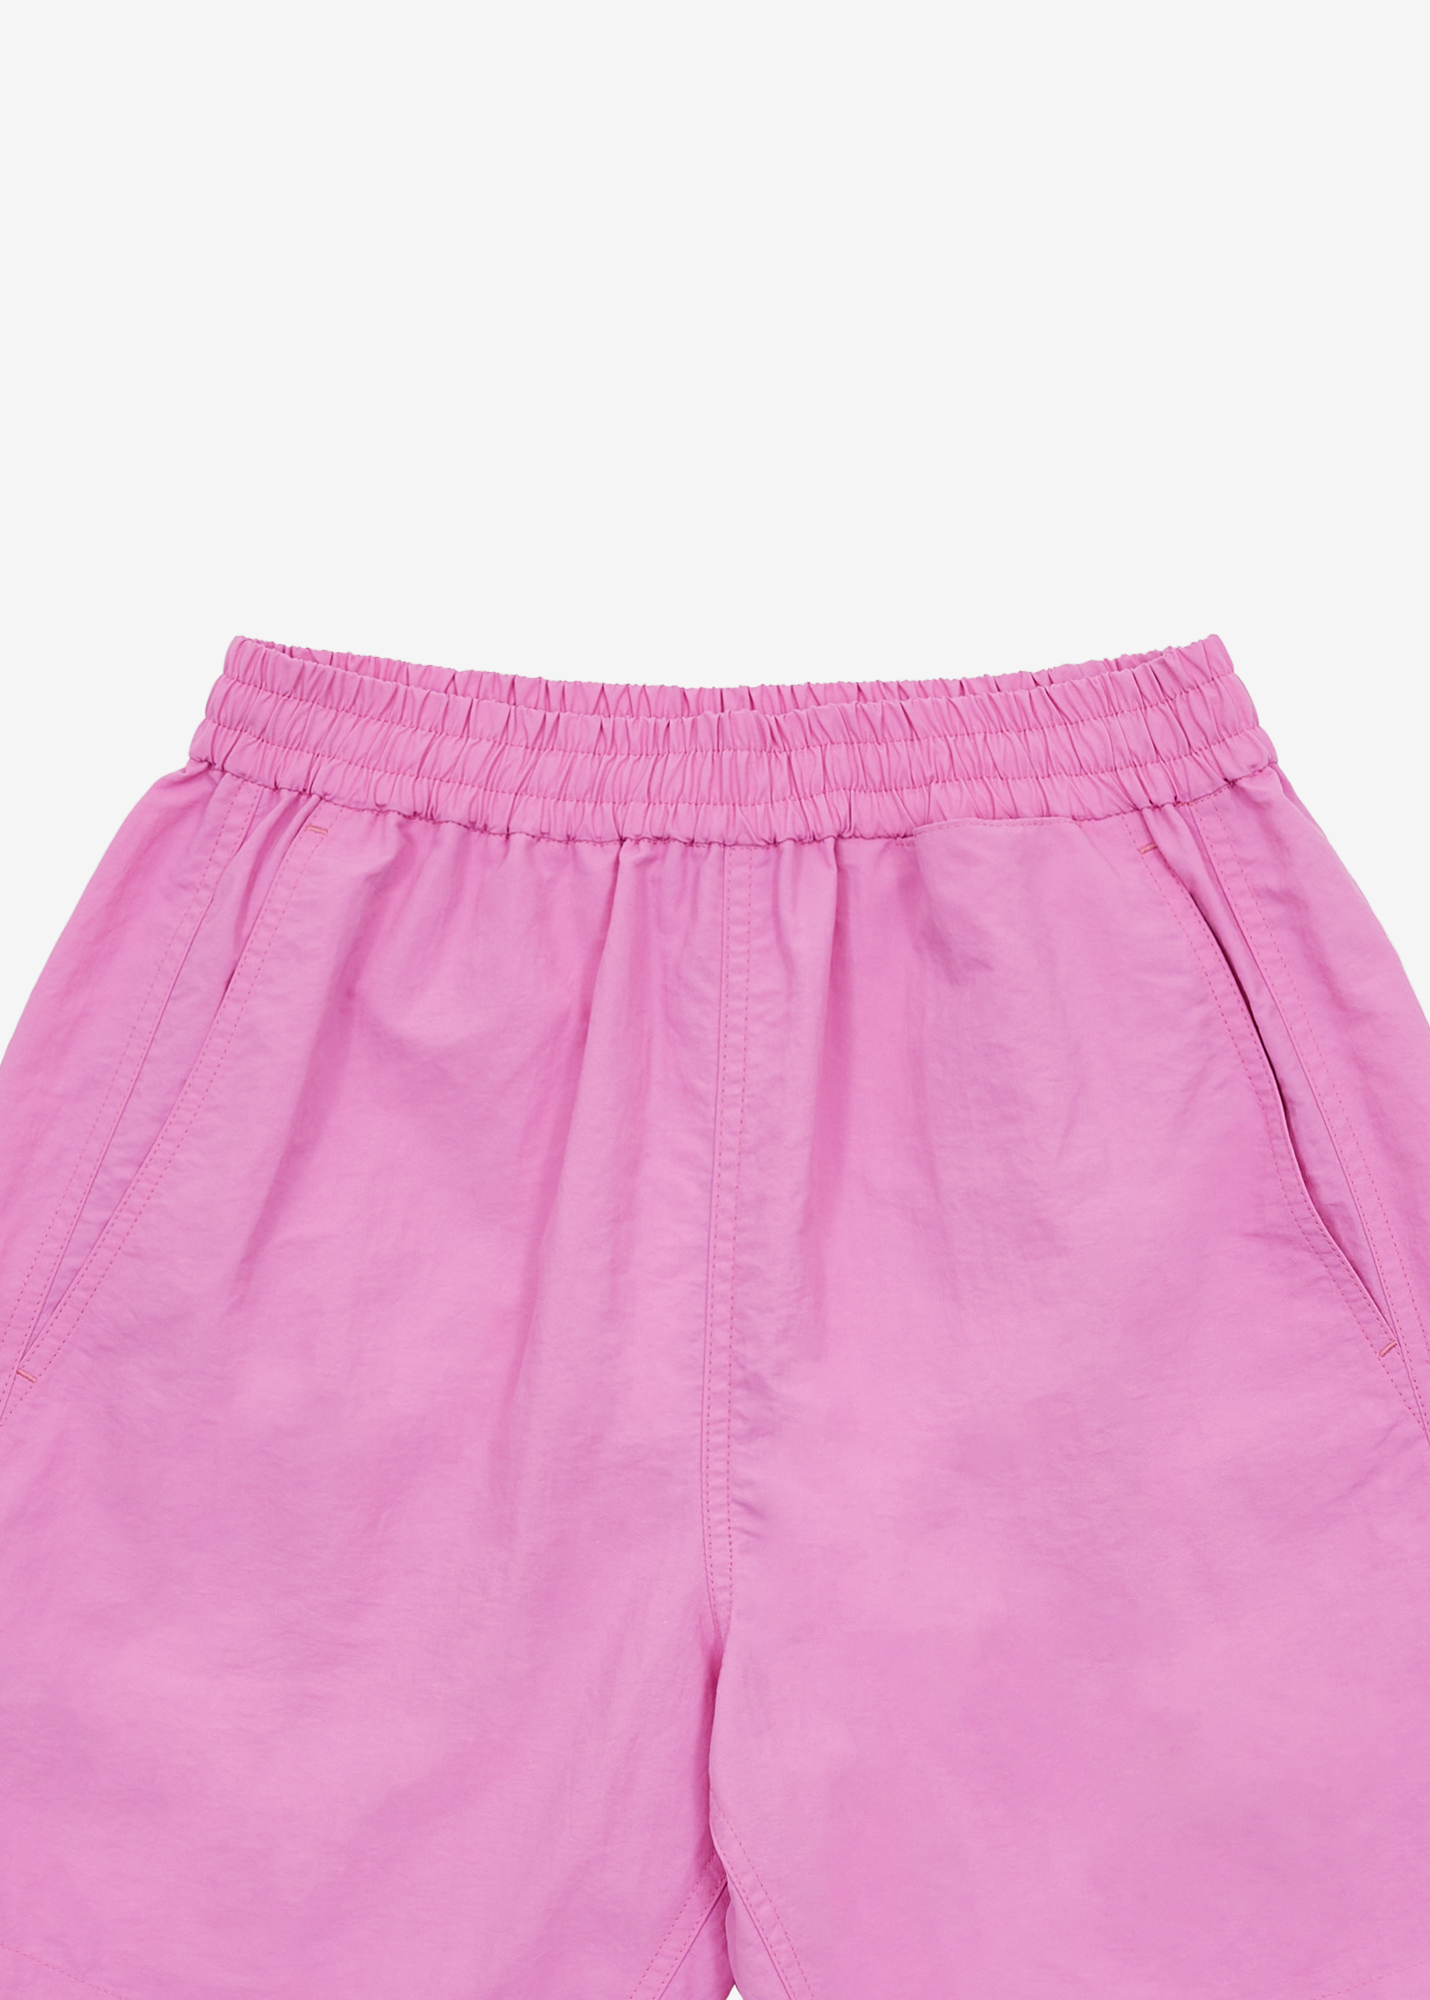 Pocket shorts pants - Pink